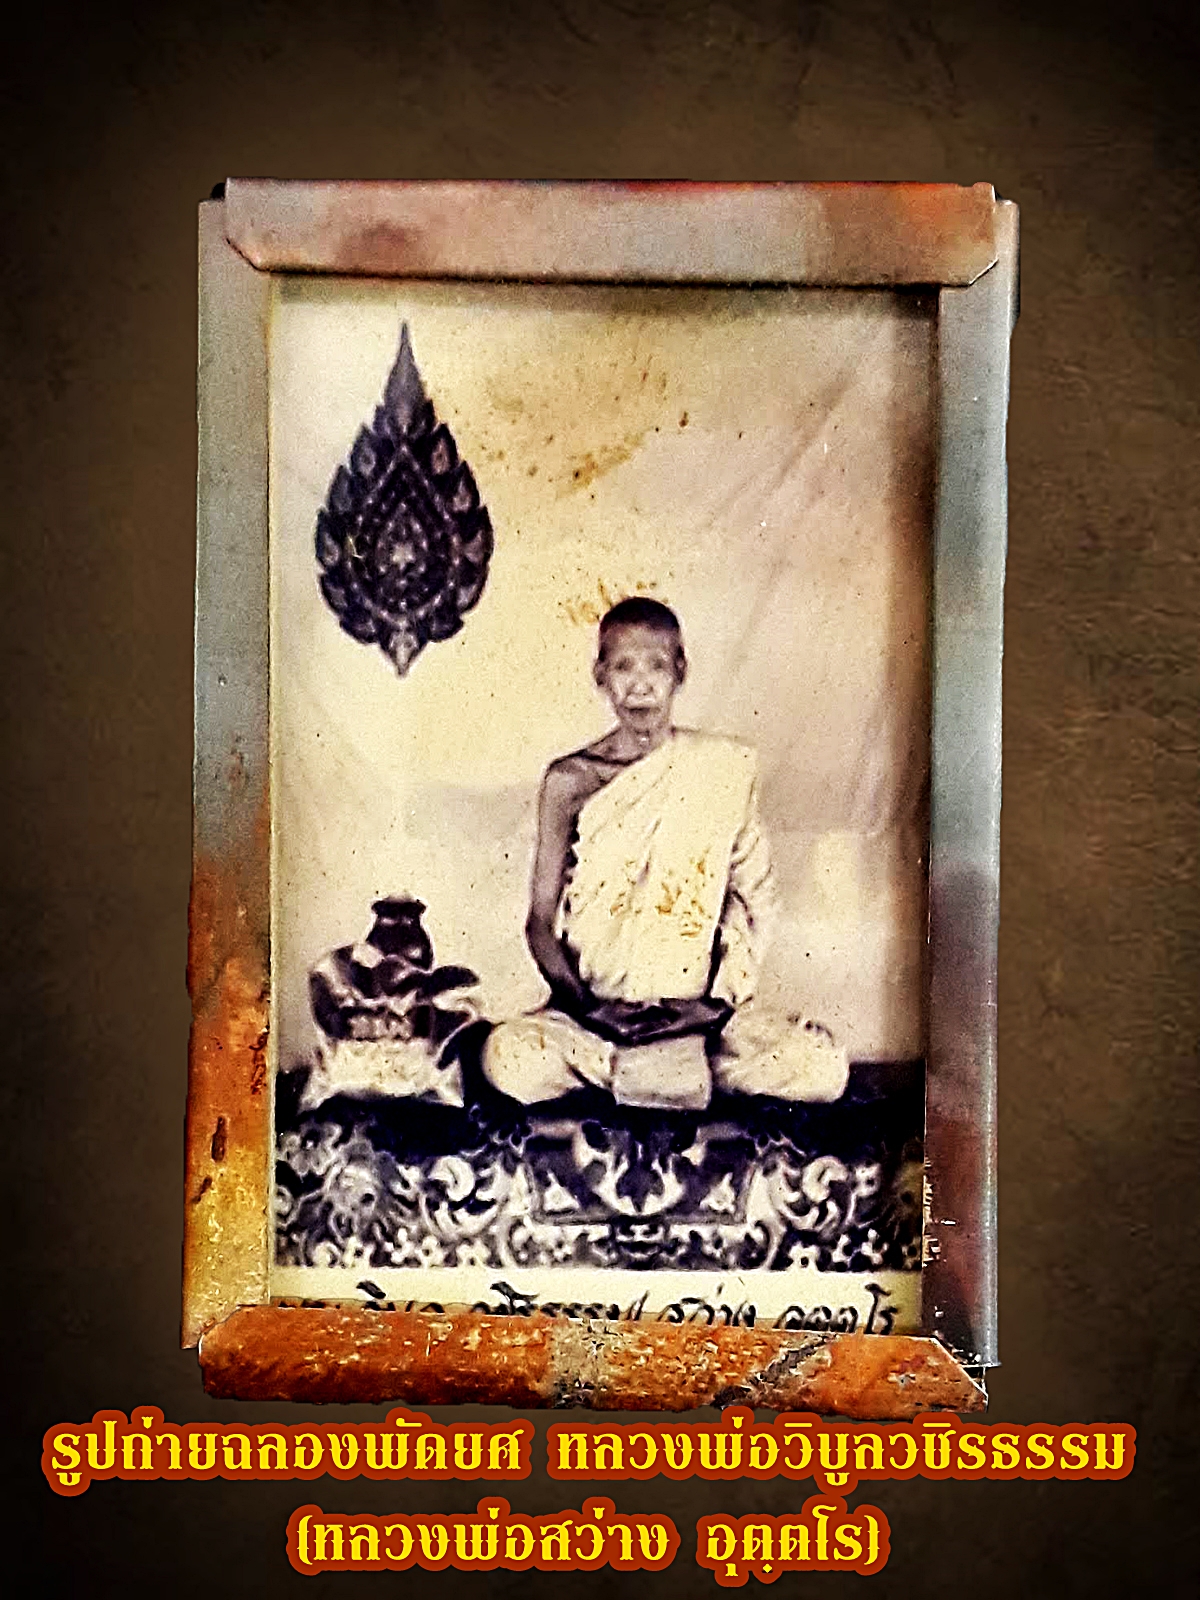 รูปถ่ายฉลองพัดยศ หลวงพ่อวิบูลวชิรธรรม (หลวงพ่อสว่าง อุตฺตโร) เลี่ยมกรอบทองแดง ขนาดคล้องคอ รูปที่ 1